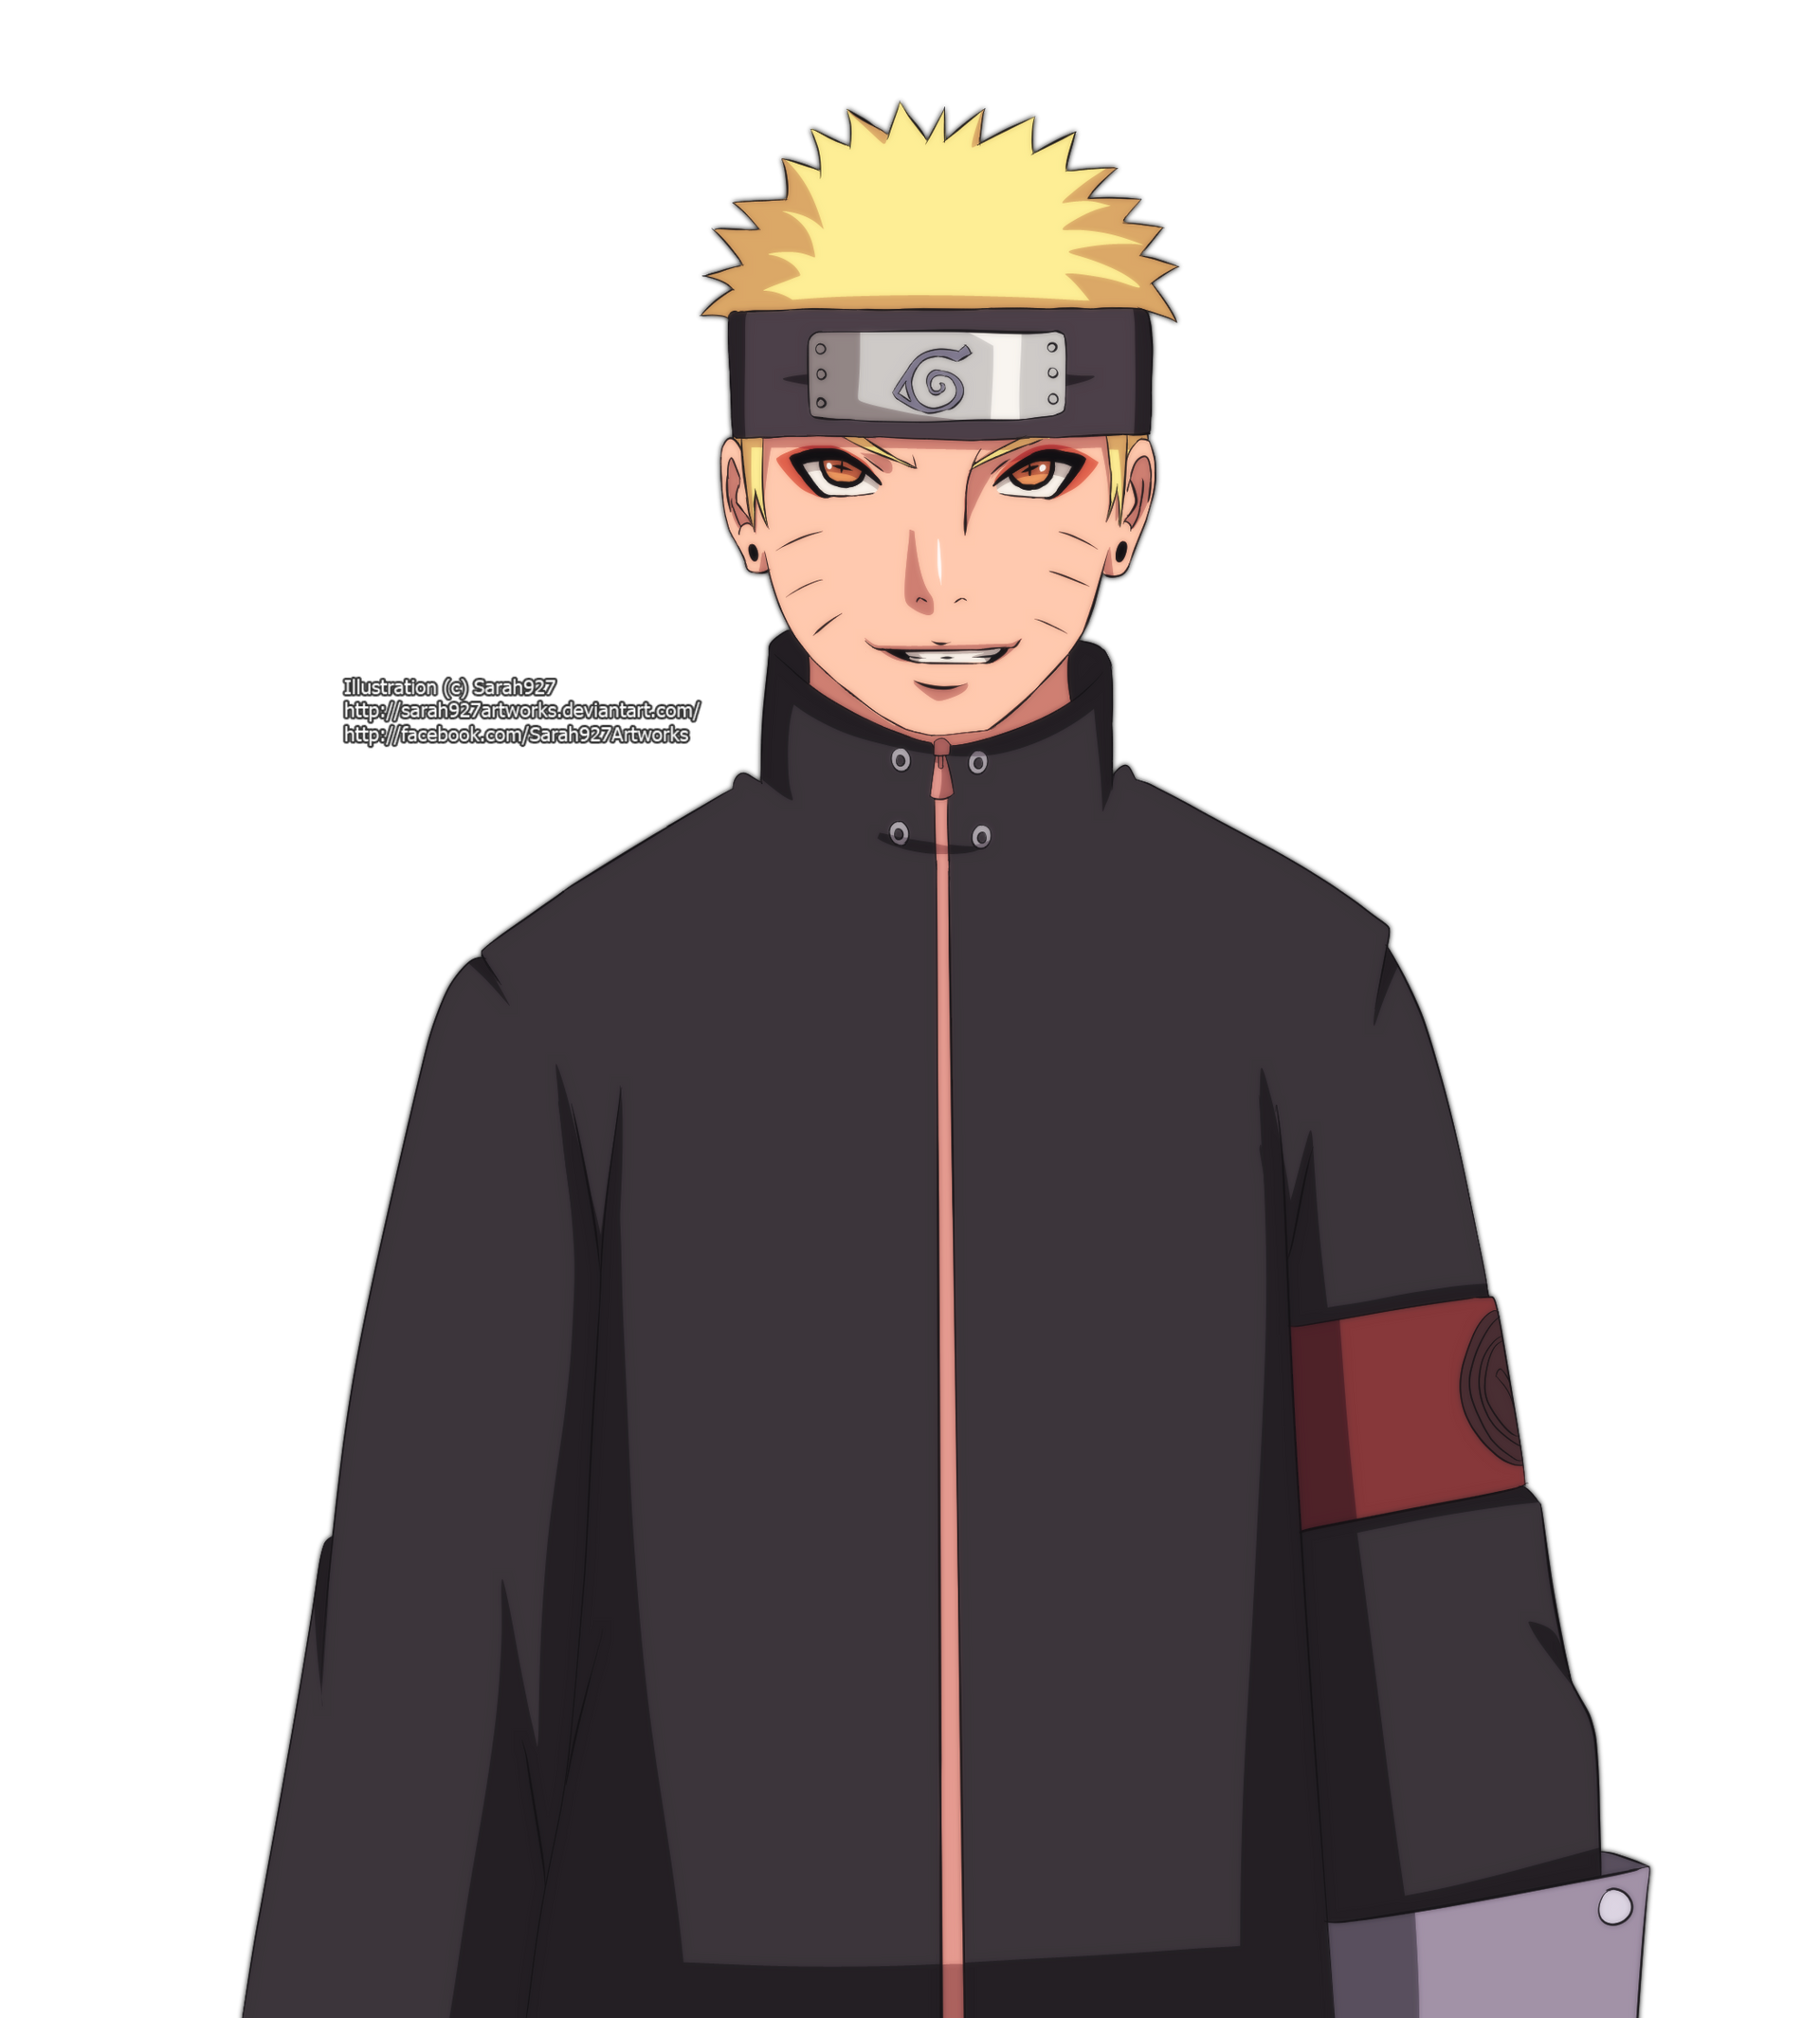 Naruto UzumakiJonin (Collection) by iEnniDESIGN on DeviantArt